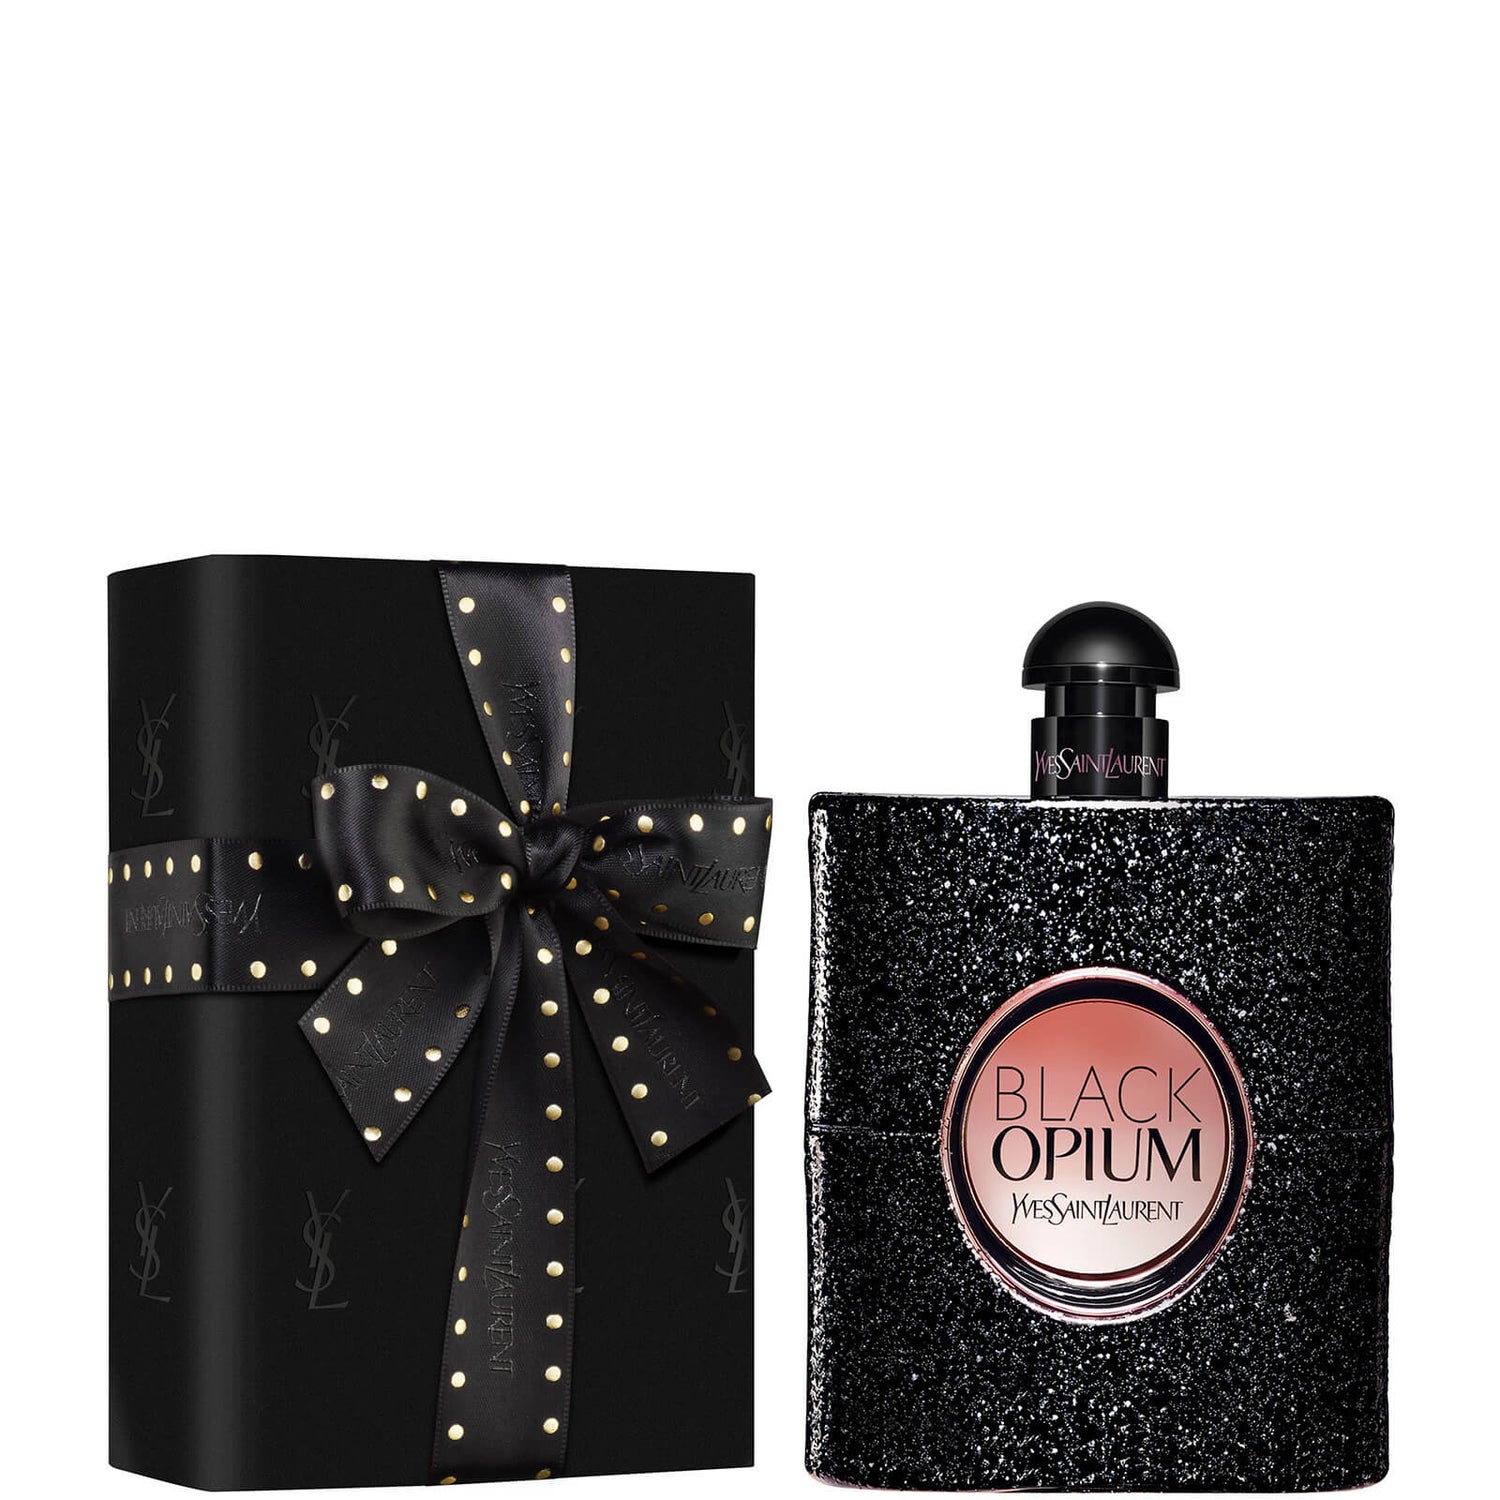 Yves Saint Laurent προ-περιτυλιγμένο Black Opium Eau de Parfum - 150 ml